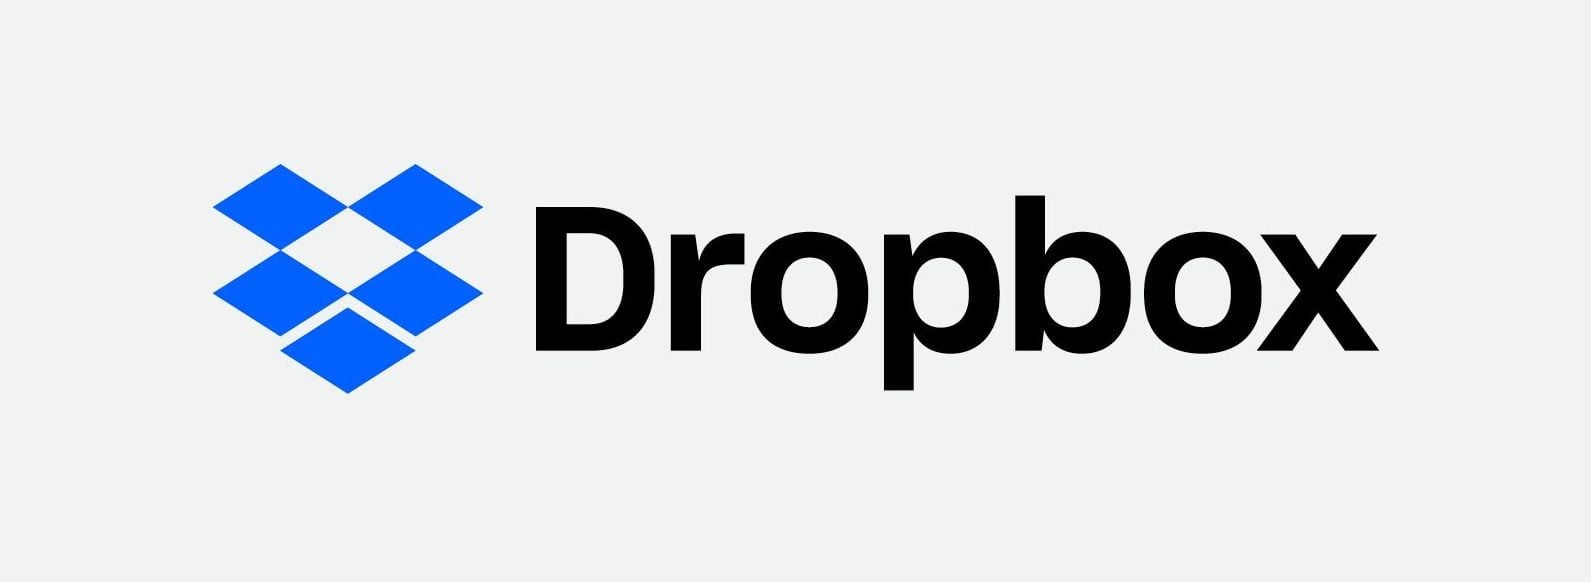 company-culture-examples-dropbox